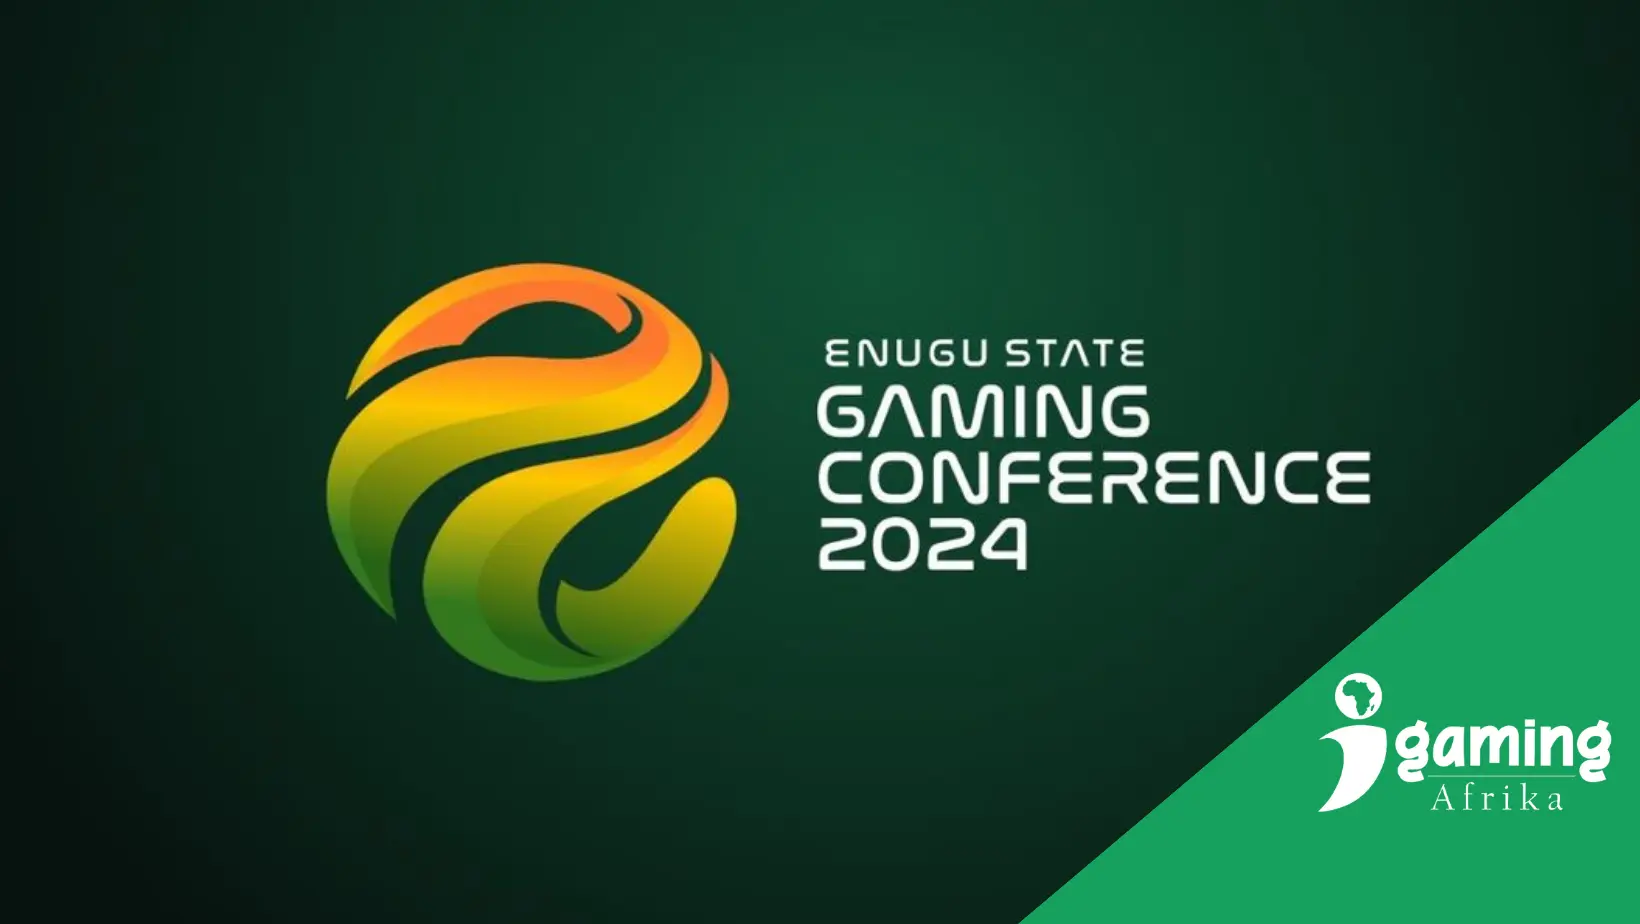 Enugu State Gaming Conference 2024